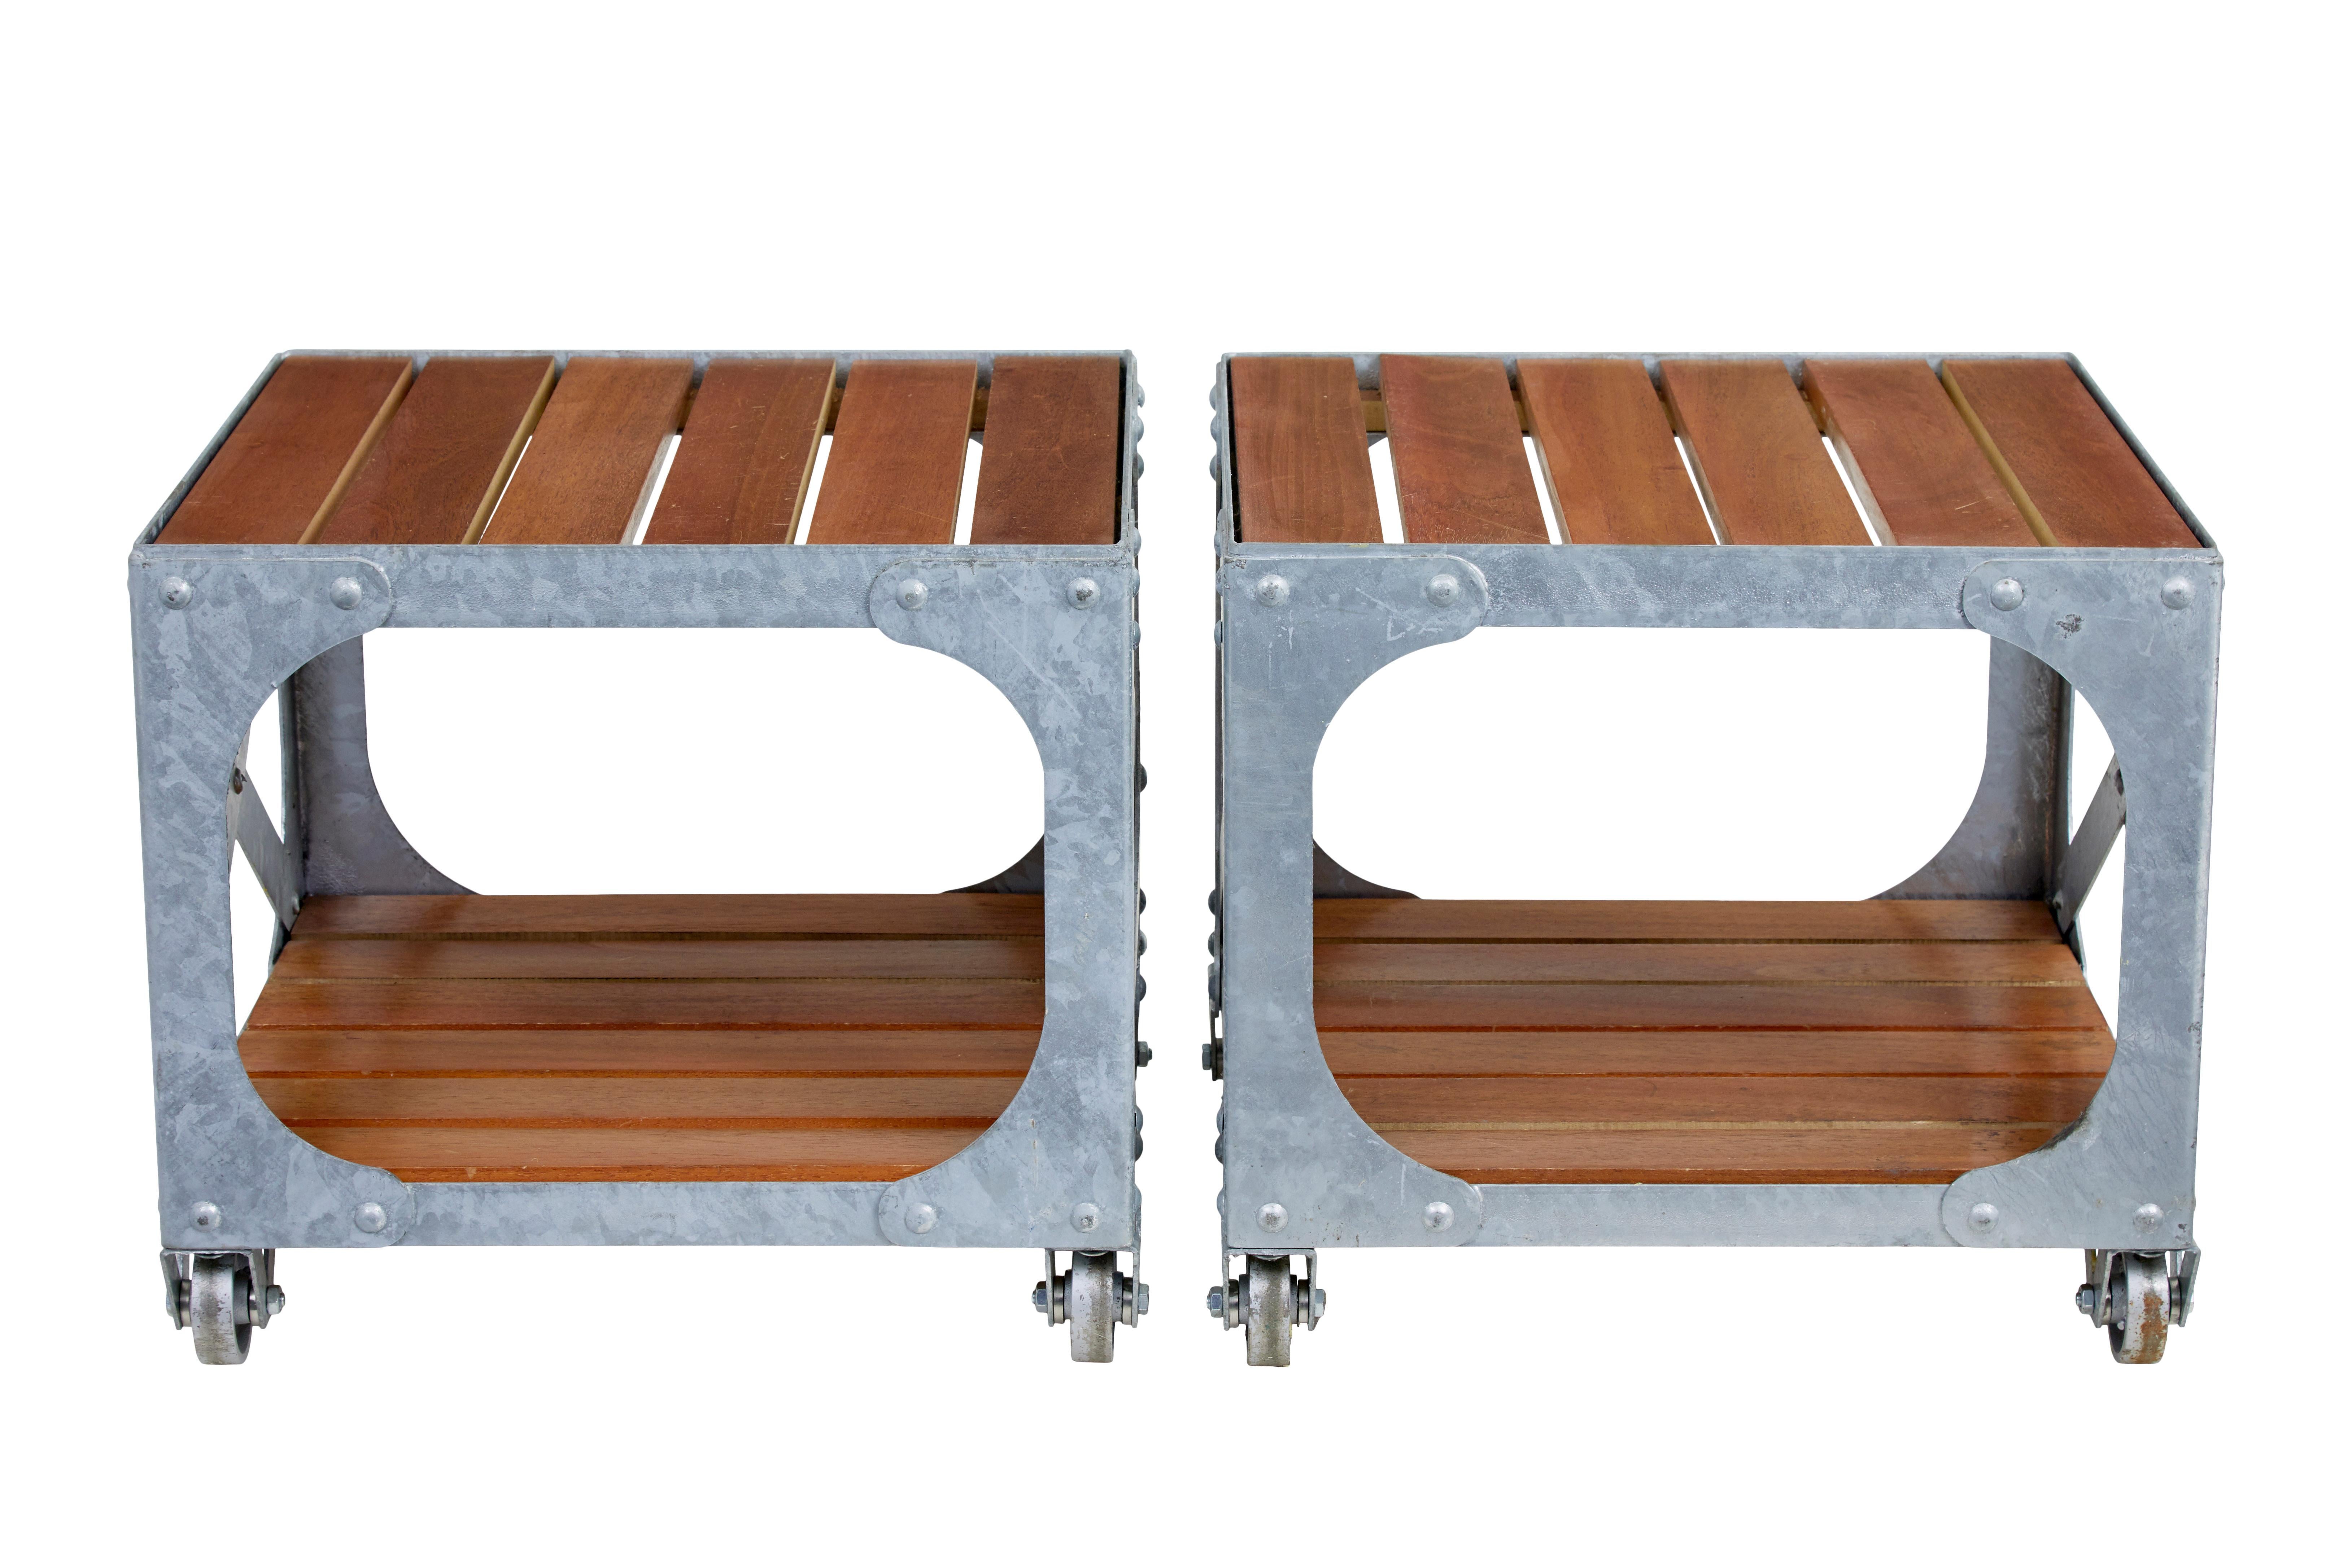 Paire de tables d'appoint industrielles en acier galvanisé et en teck, vers 1990.

Paire de tables d'inspiration industrielle de bonne qualité en acier galvanisé avec des lattes insérées en teck.  S'intègre parfaitement dans un intérieur ou un